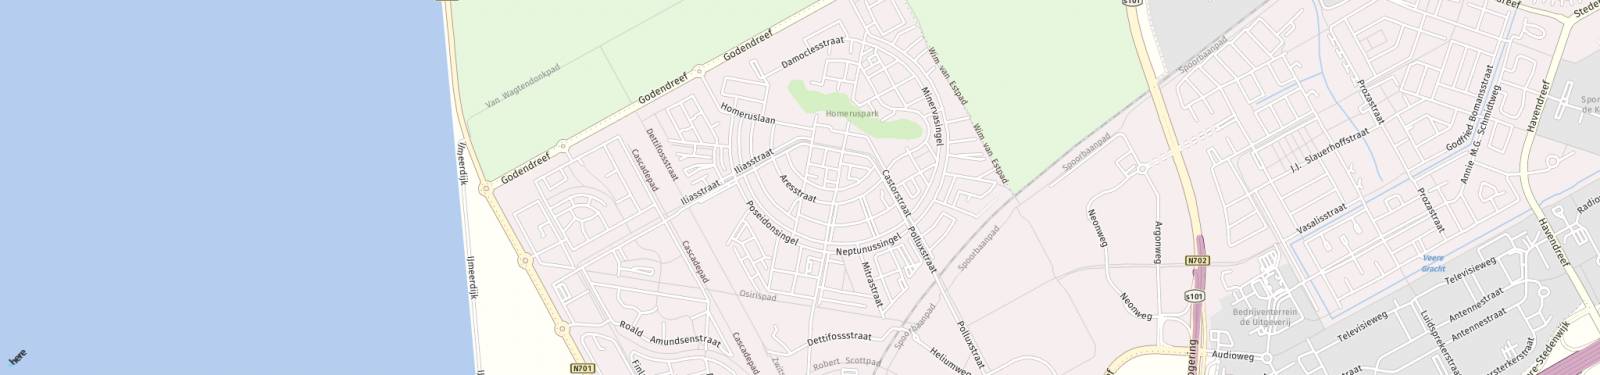 Kaart met locatie Huurwoning Aresstraat